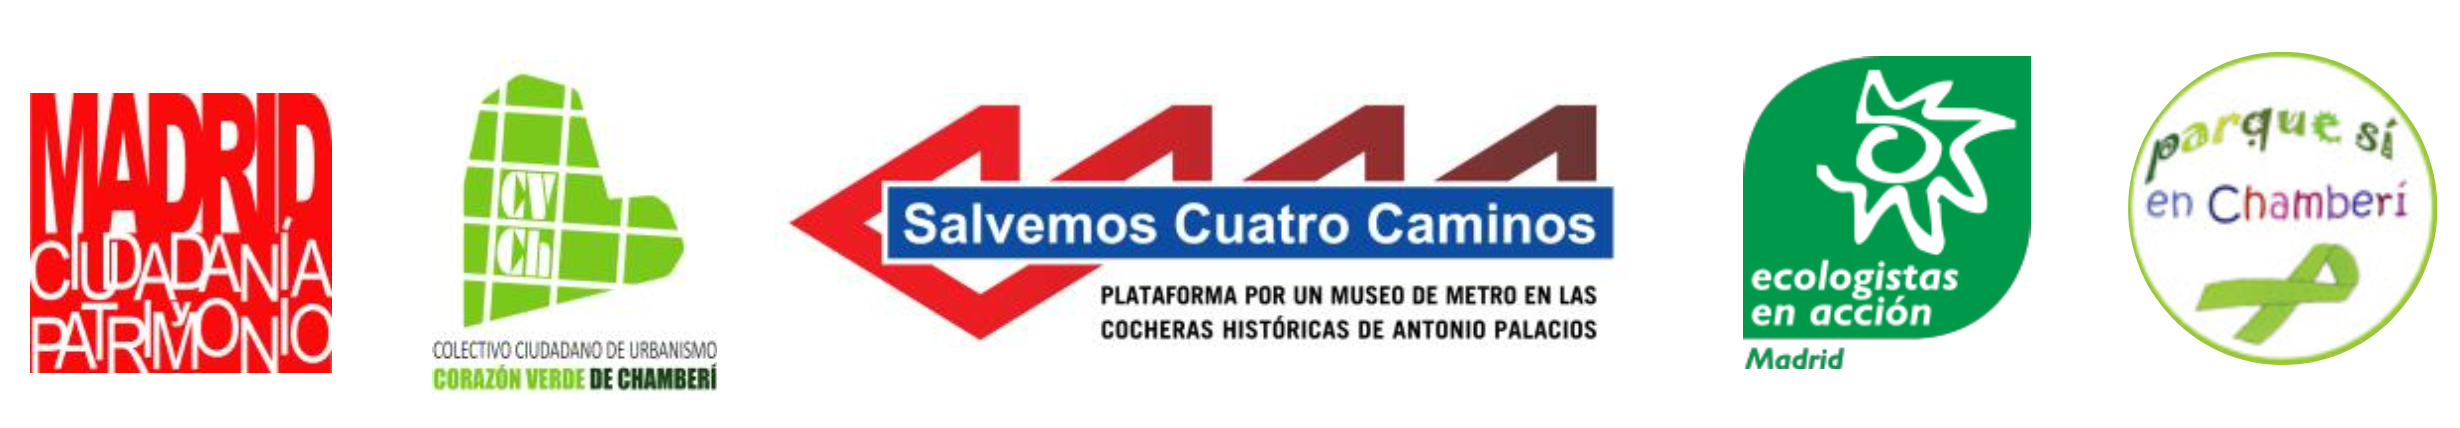 cabecera_comunicado_cocheras.png